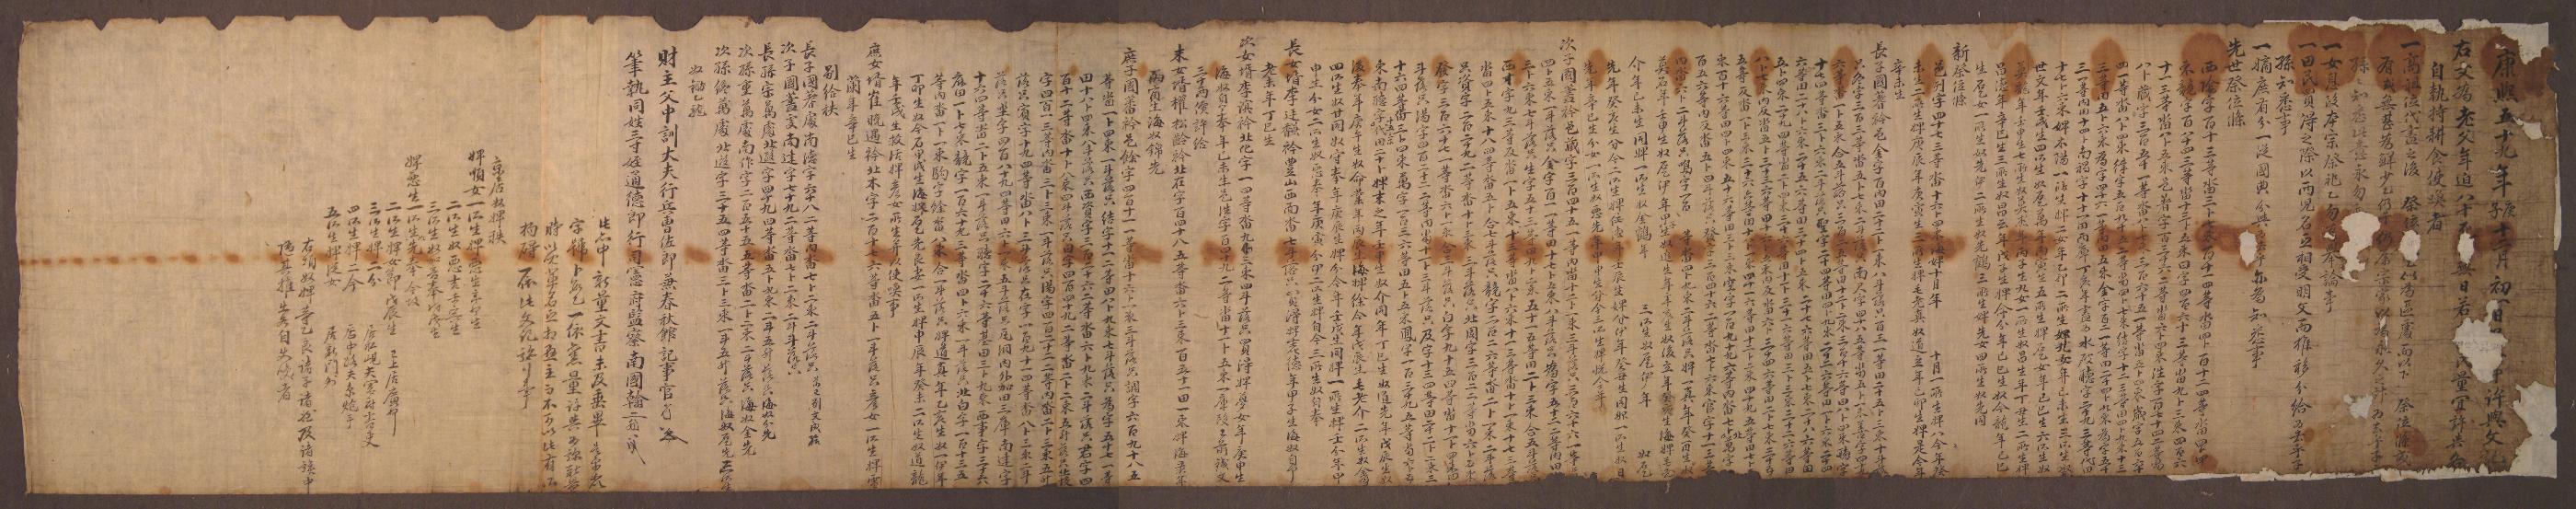 남노명(南老明)이 1720년에 작성한 분급문기